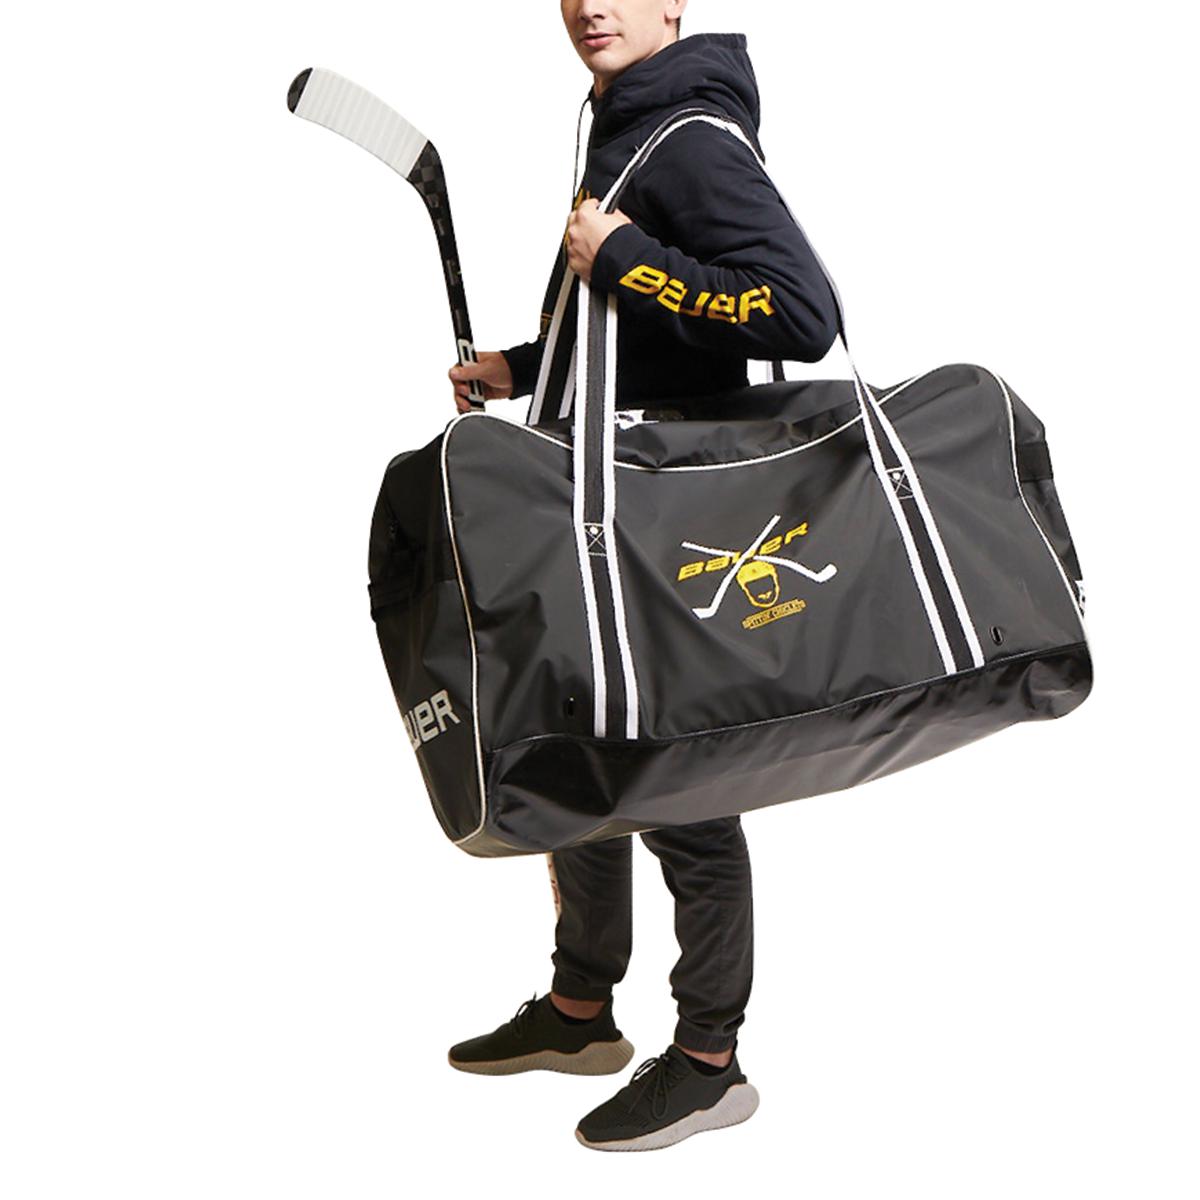 TronX Hockey Equipment Locker Bag (Black/Silver) - Walmart.com